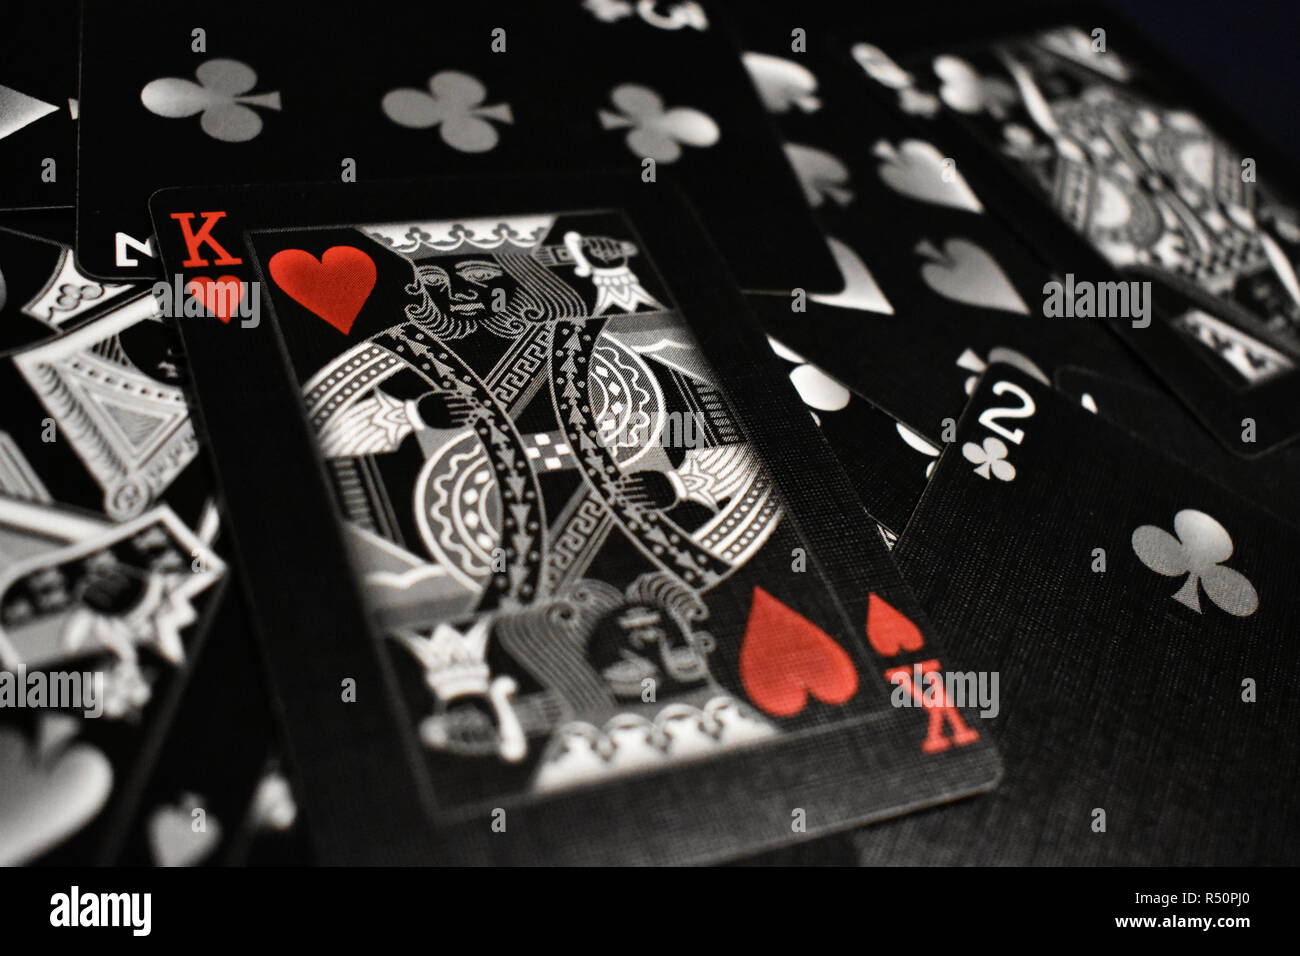 Atemberaubende Aufnahme von schwarzen und weißen Karten spielen, mit dem König der Herzen ruht auf dem Stapel. Noten von roten hinzufügen Betonung auf das Herzsymbol. Stockfoto